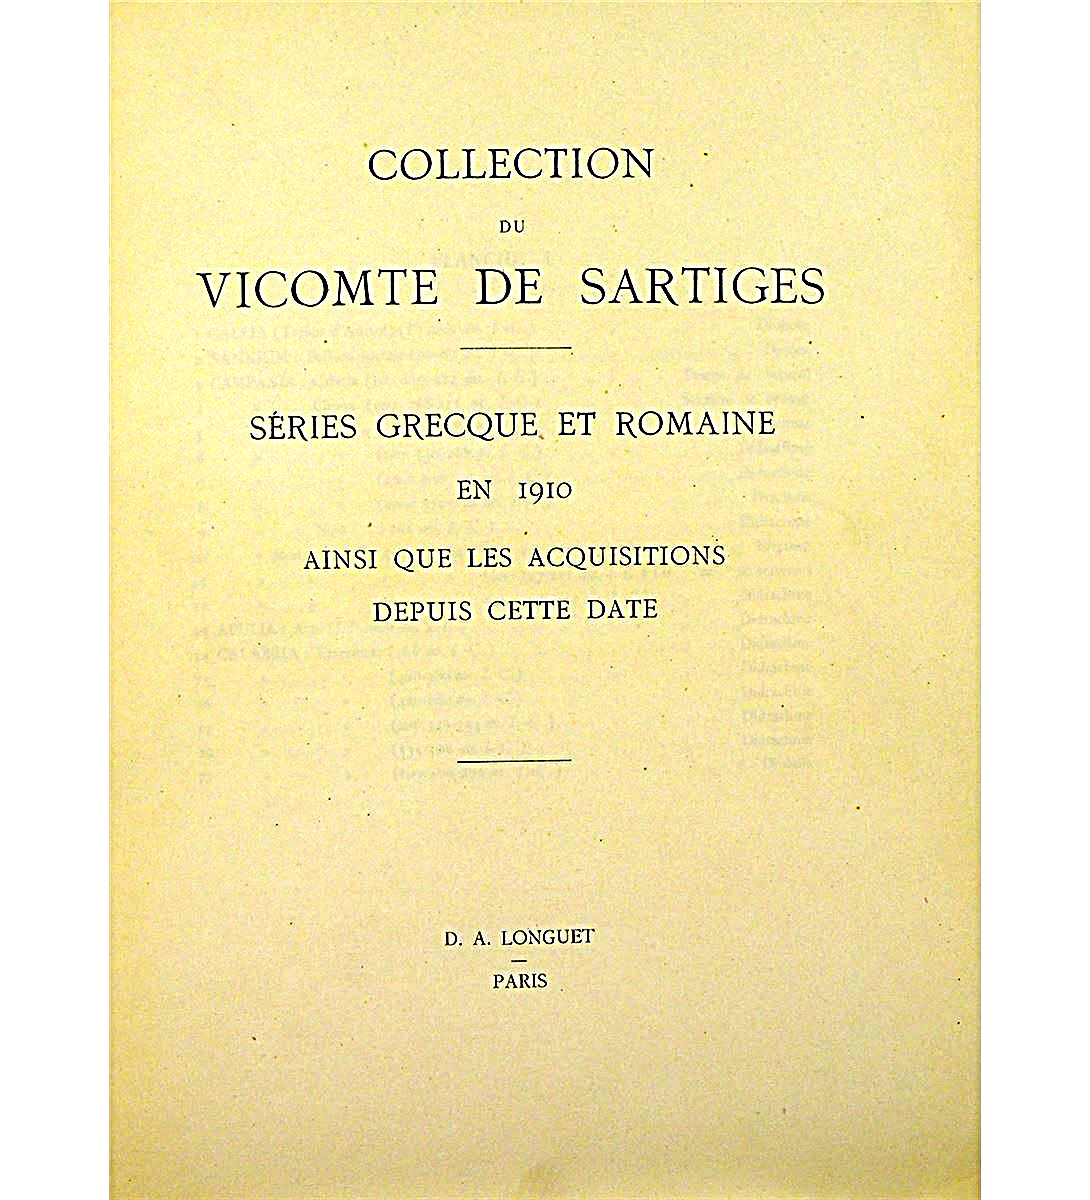 de Sartiges Collection book (D.A. Longuet) Title Page).jpg